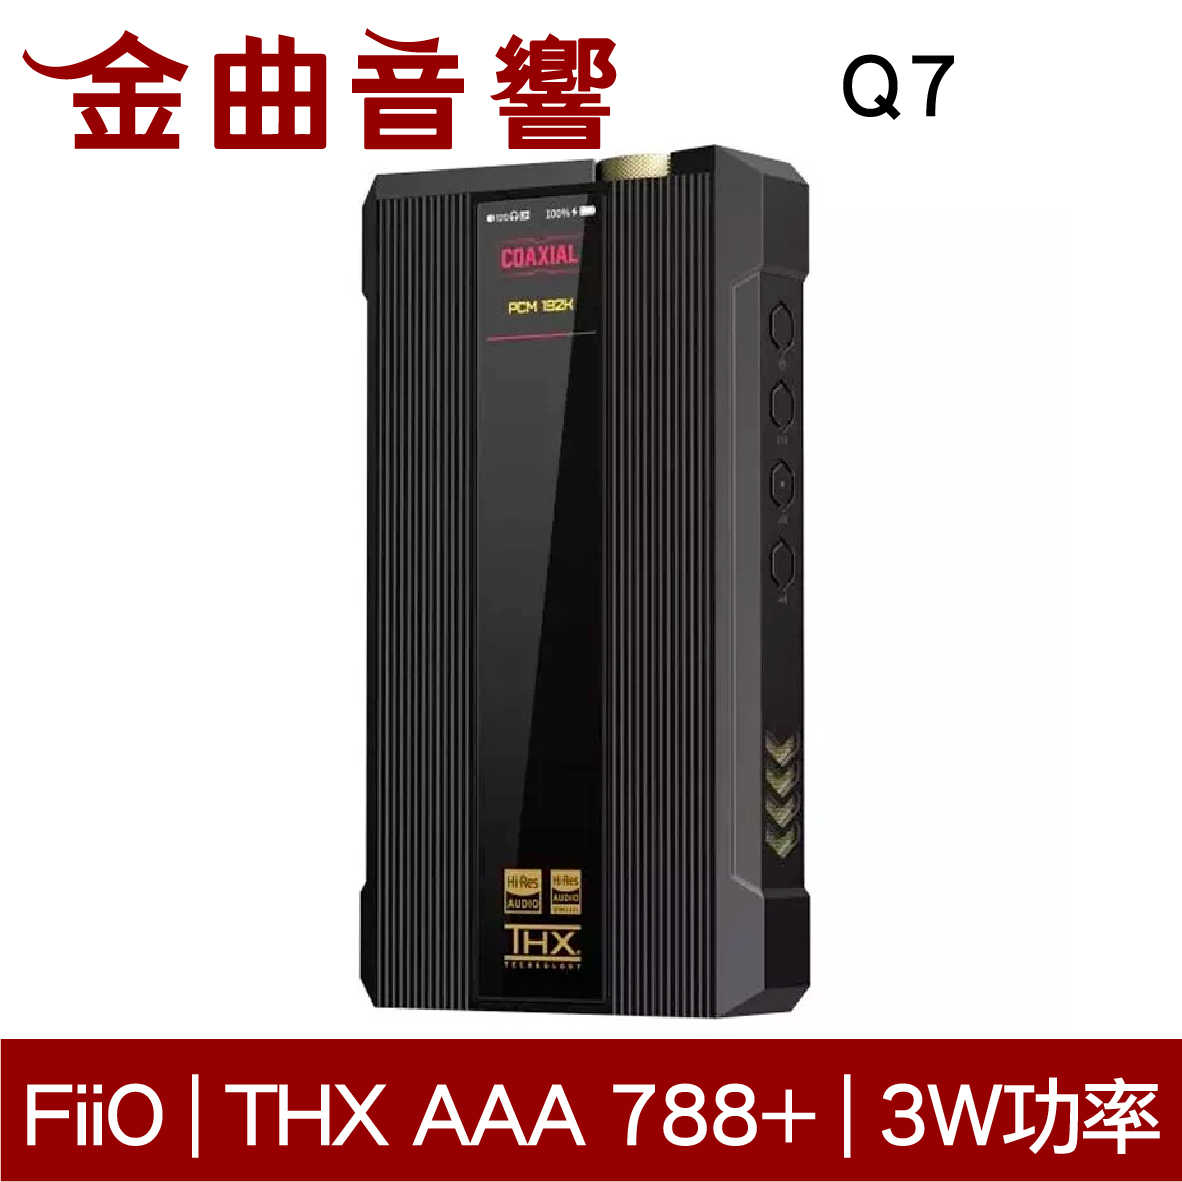 FiiO Q7 隨身 DAC MQA 解碼 藍牙5.0 THX AAA 788+ 平衡 耳機 擴大機 | 金曲音響